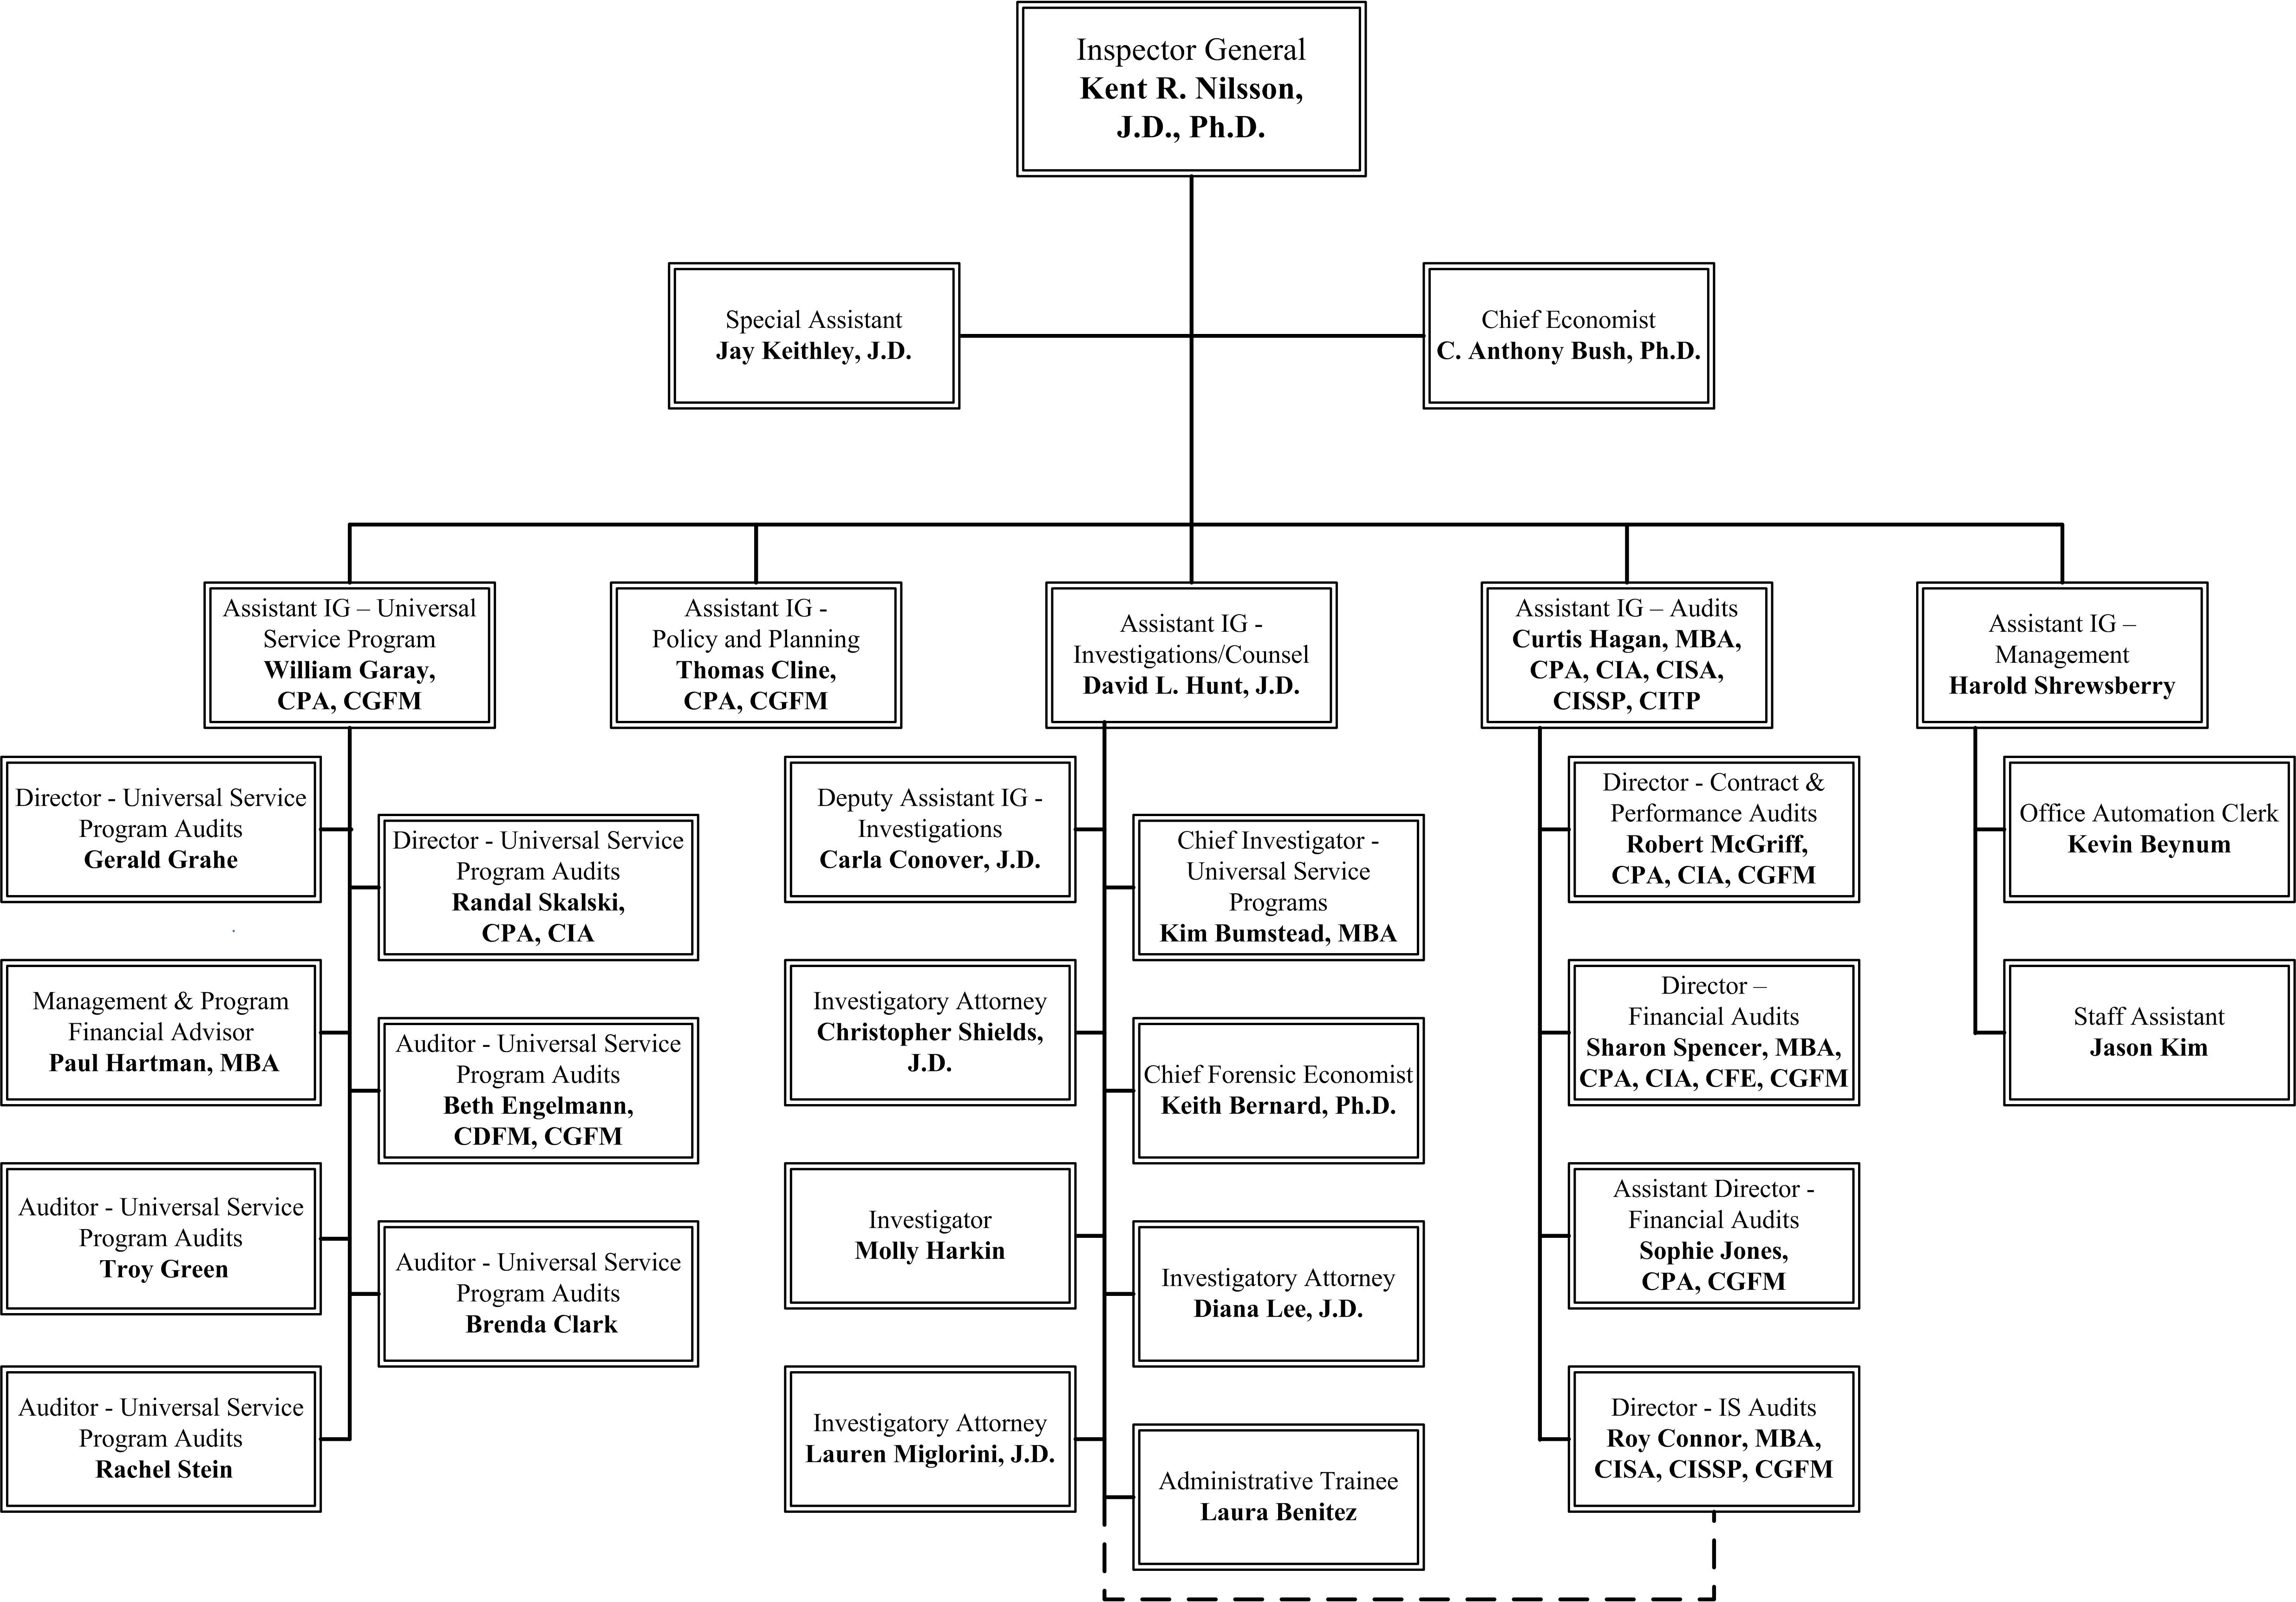 OIG Organization Chart